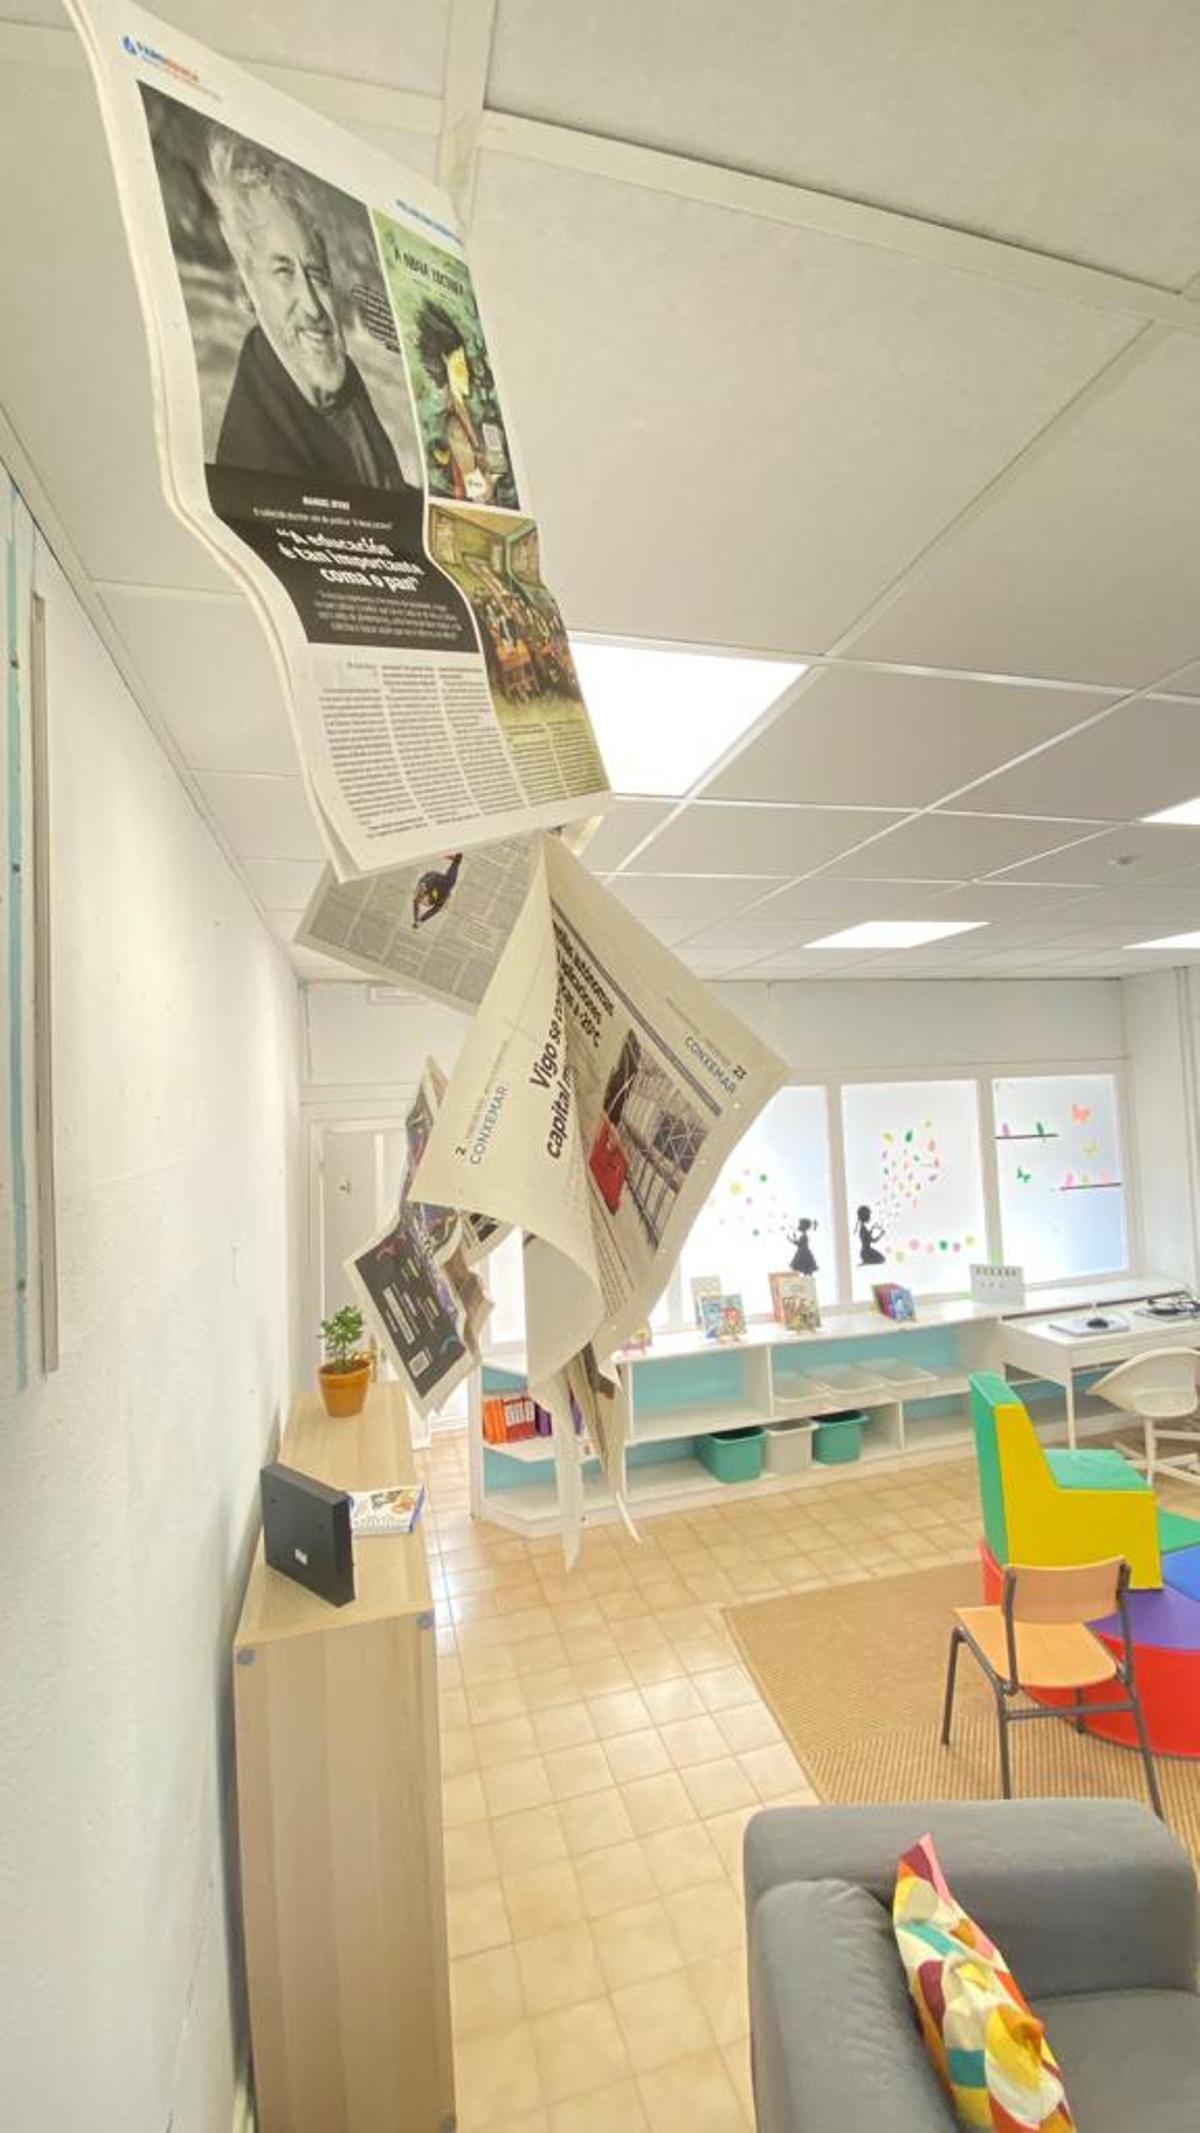 Las páginas de Faro Educa volaron por la biblioteca del CEIP Mondariz - Balneario durante la semana de la prensa.